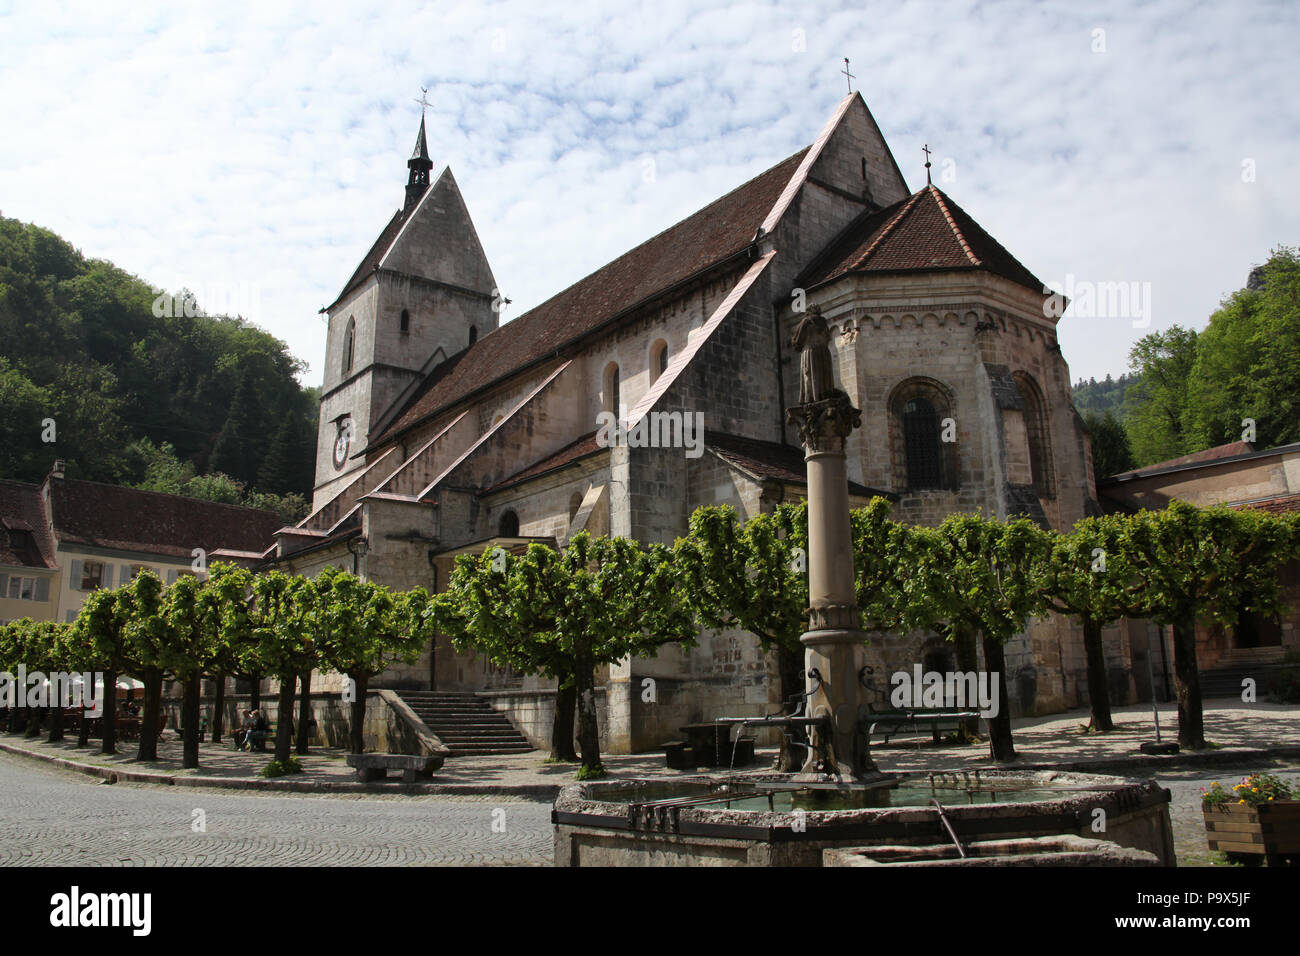 Le monastère de St Ursanne, Jura, Franches-montagnes, Suisse. Banque D'Images